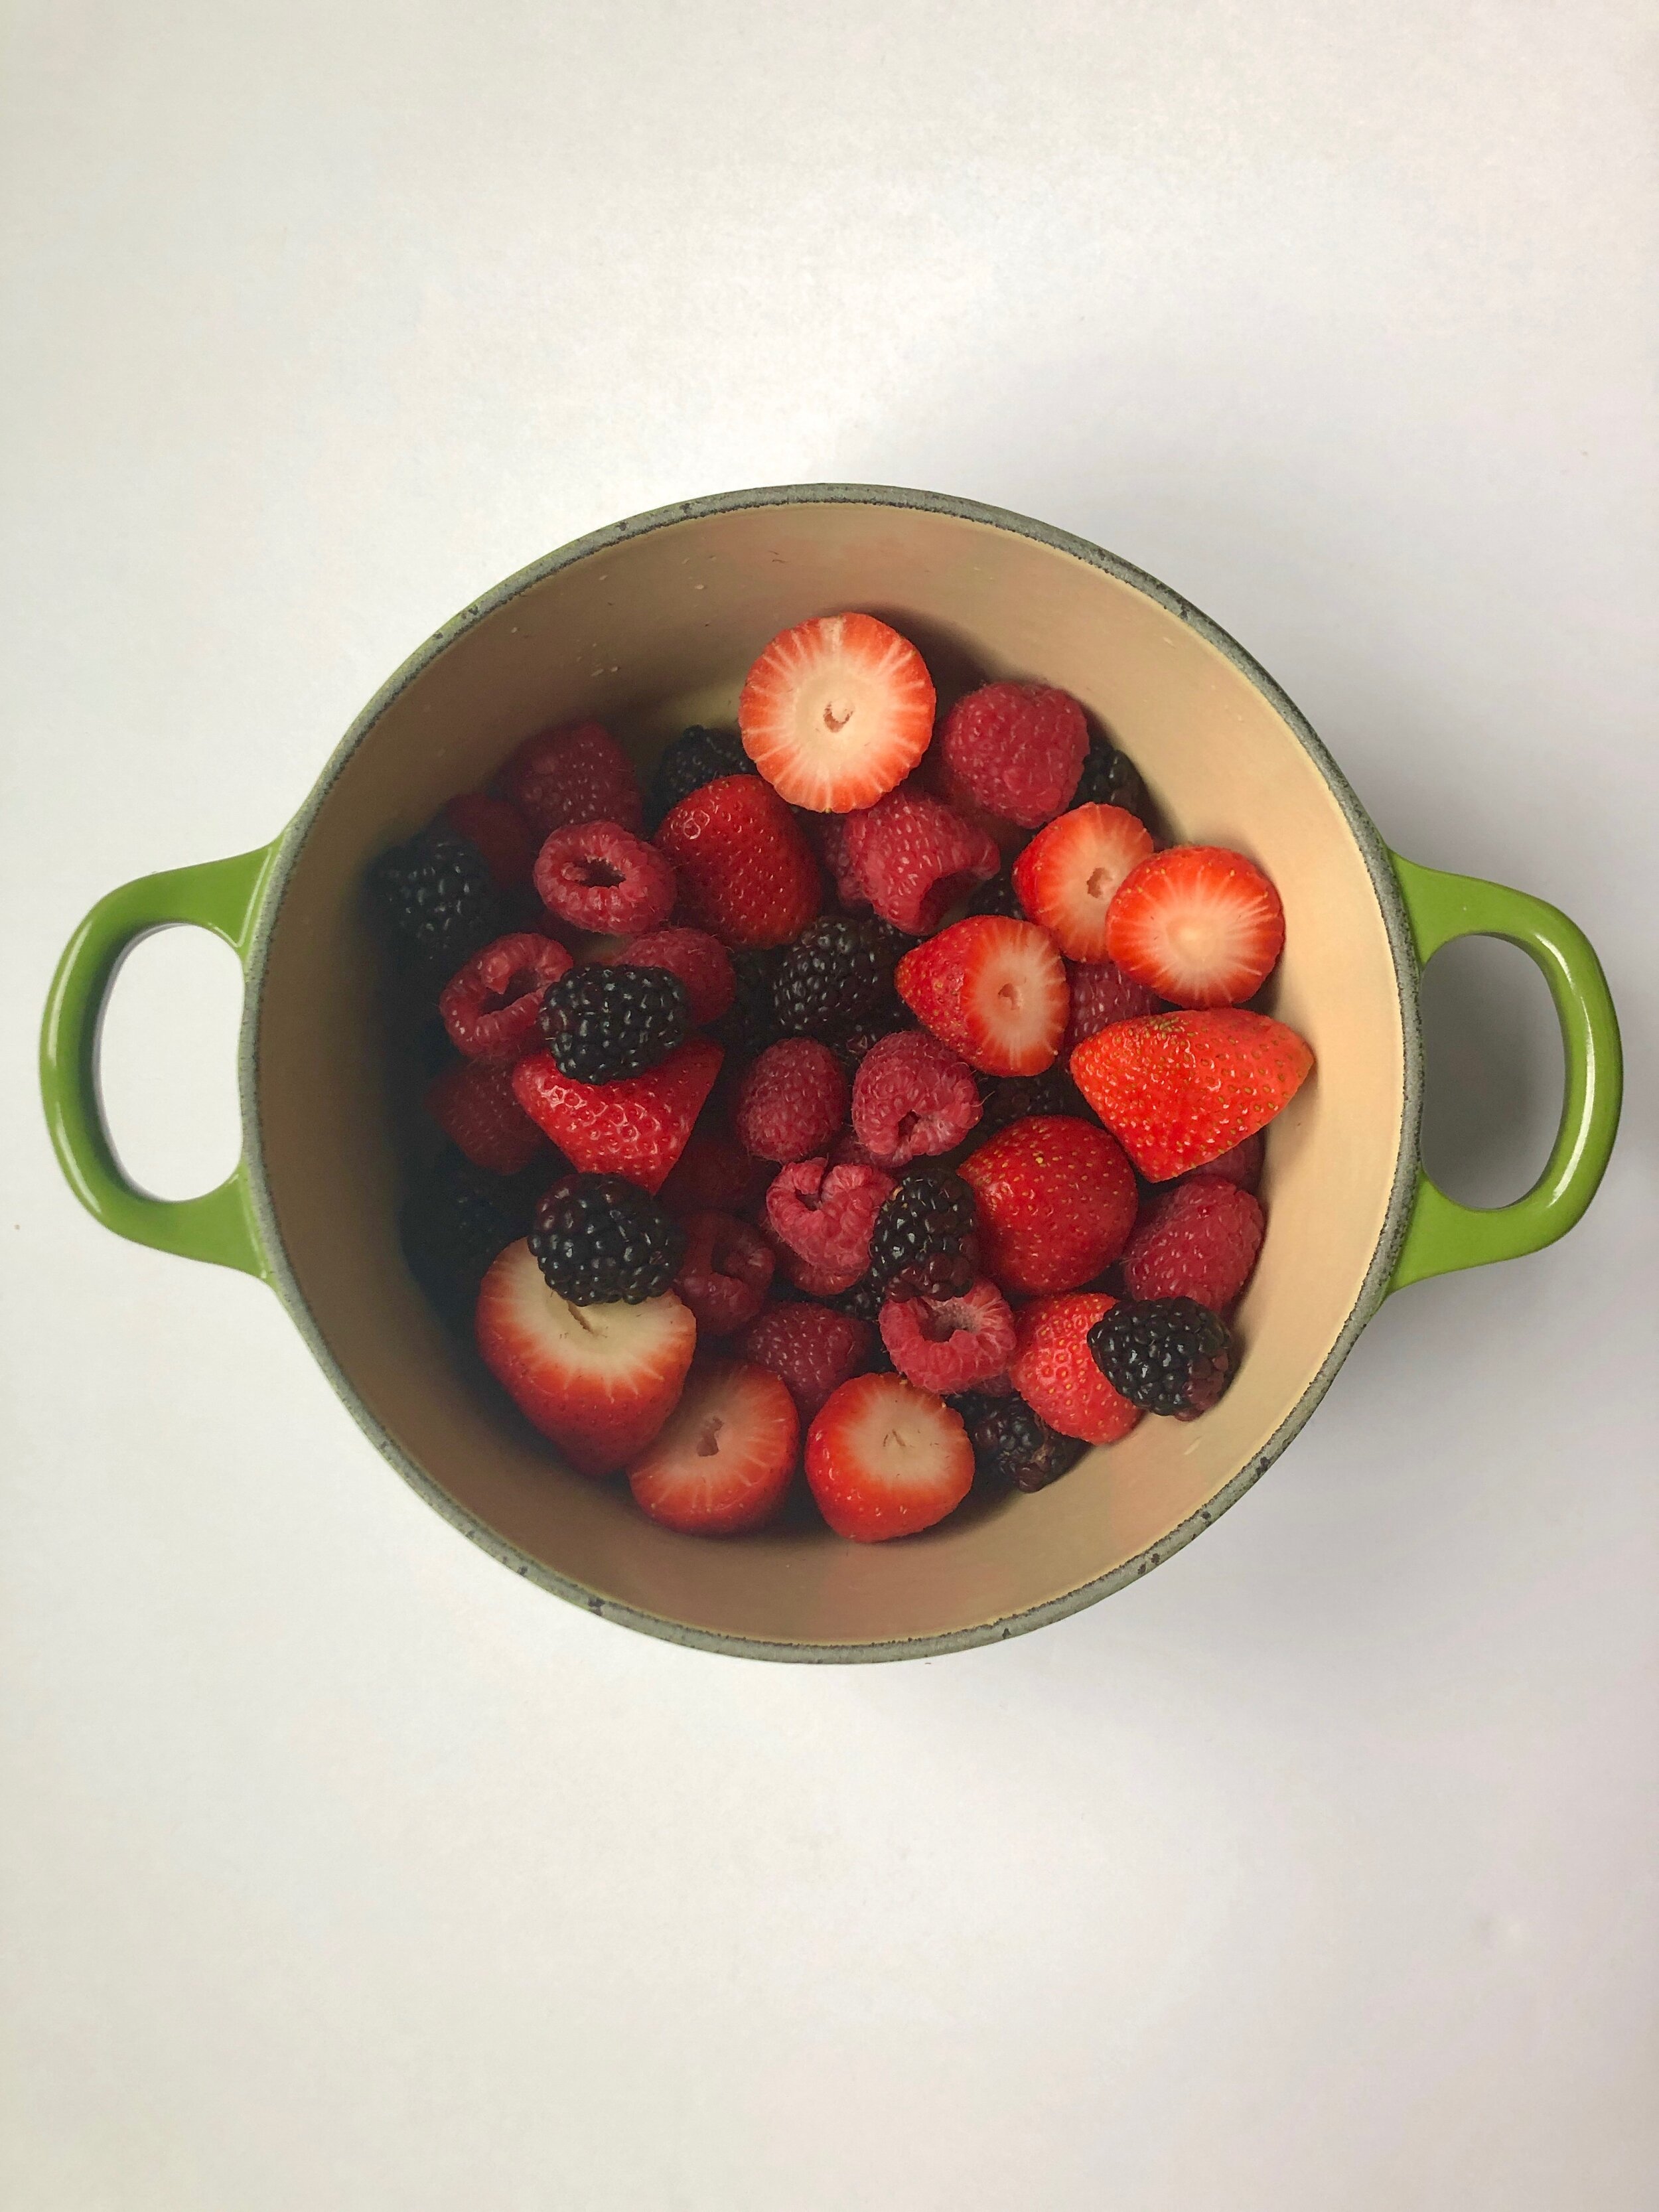 Homemade Fruit Roll-Ups Berry Mixture